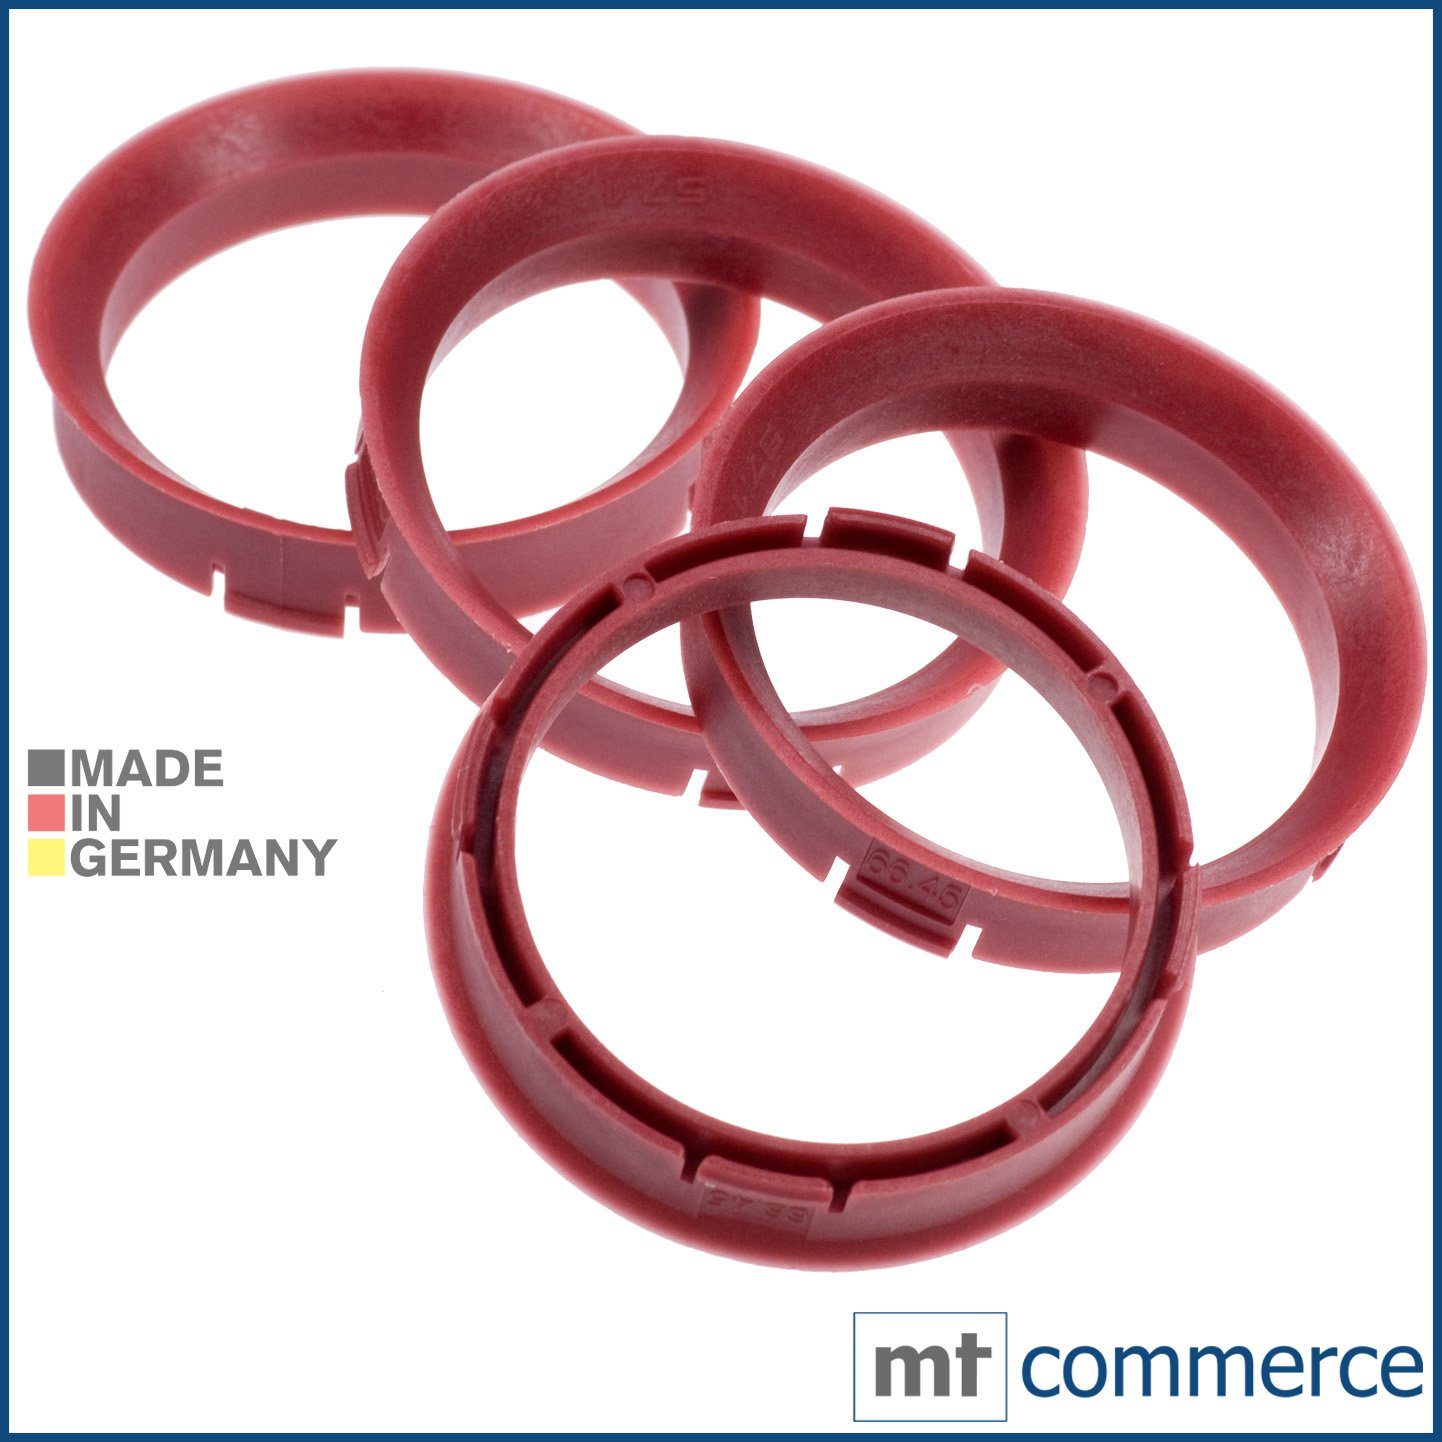 RKC Reifenstift 4X Zentrierringe rot Felgen Ringe Made in Germany, Maße: 67,45 x 57,1 mm | Reifenstifte